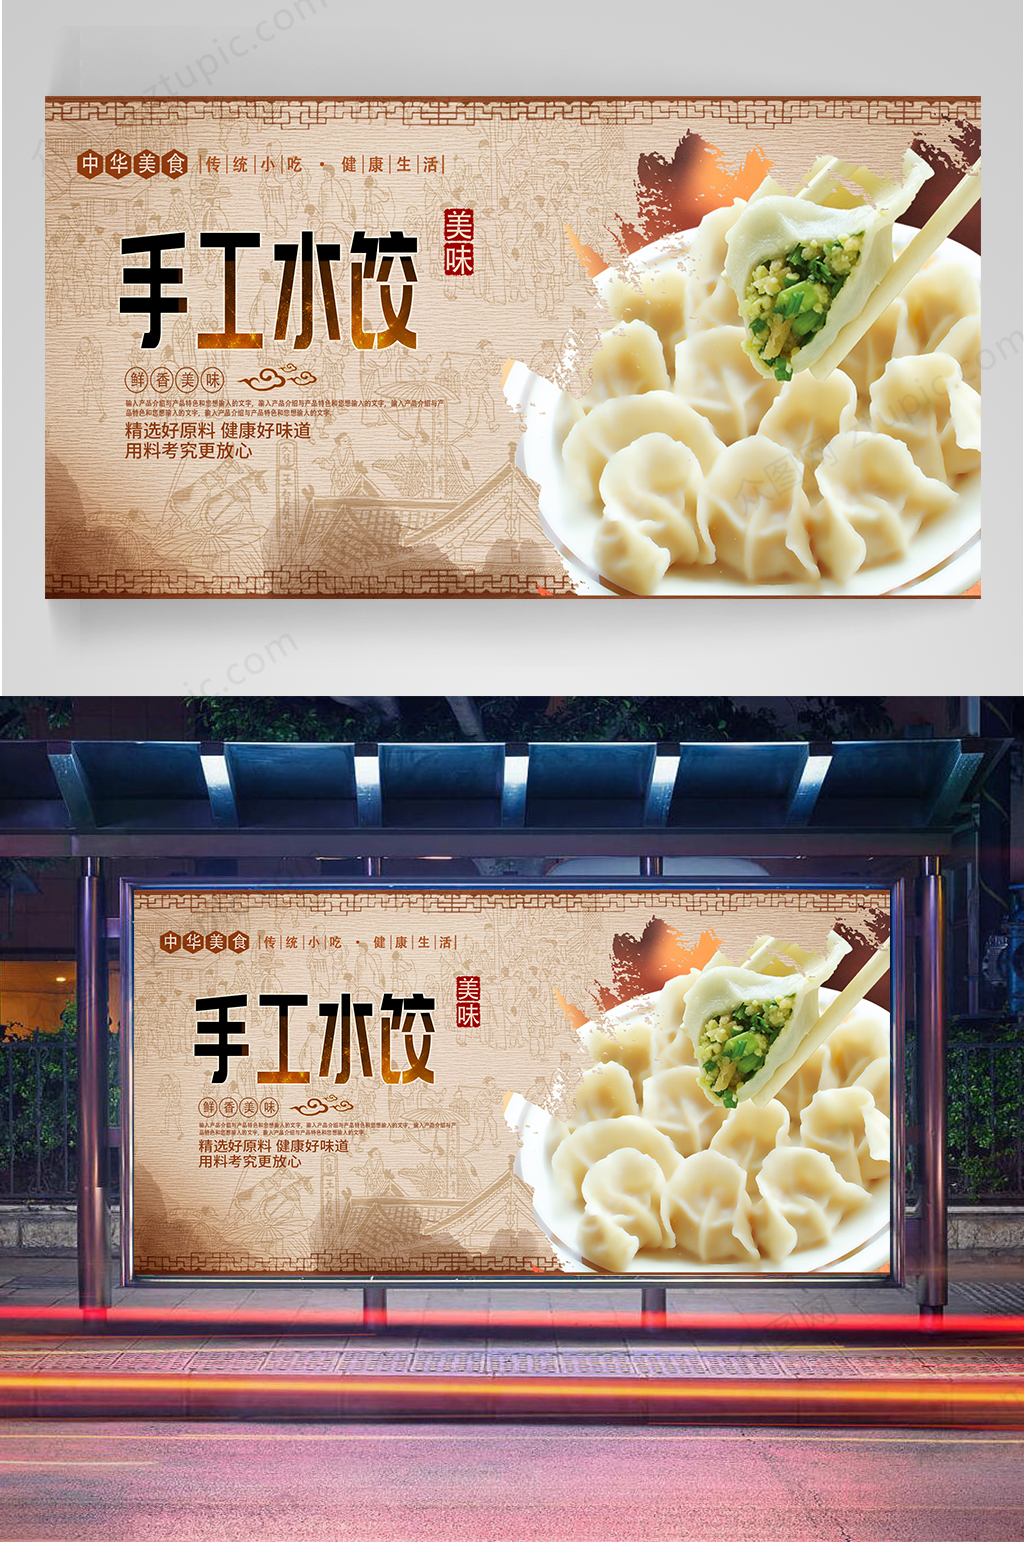 纯手工水饺微信广告词图片